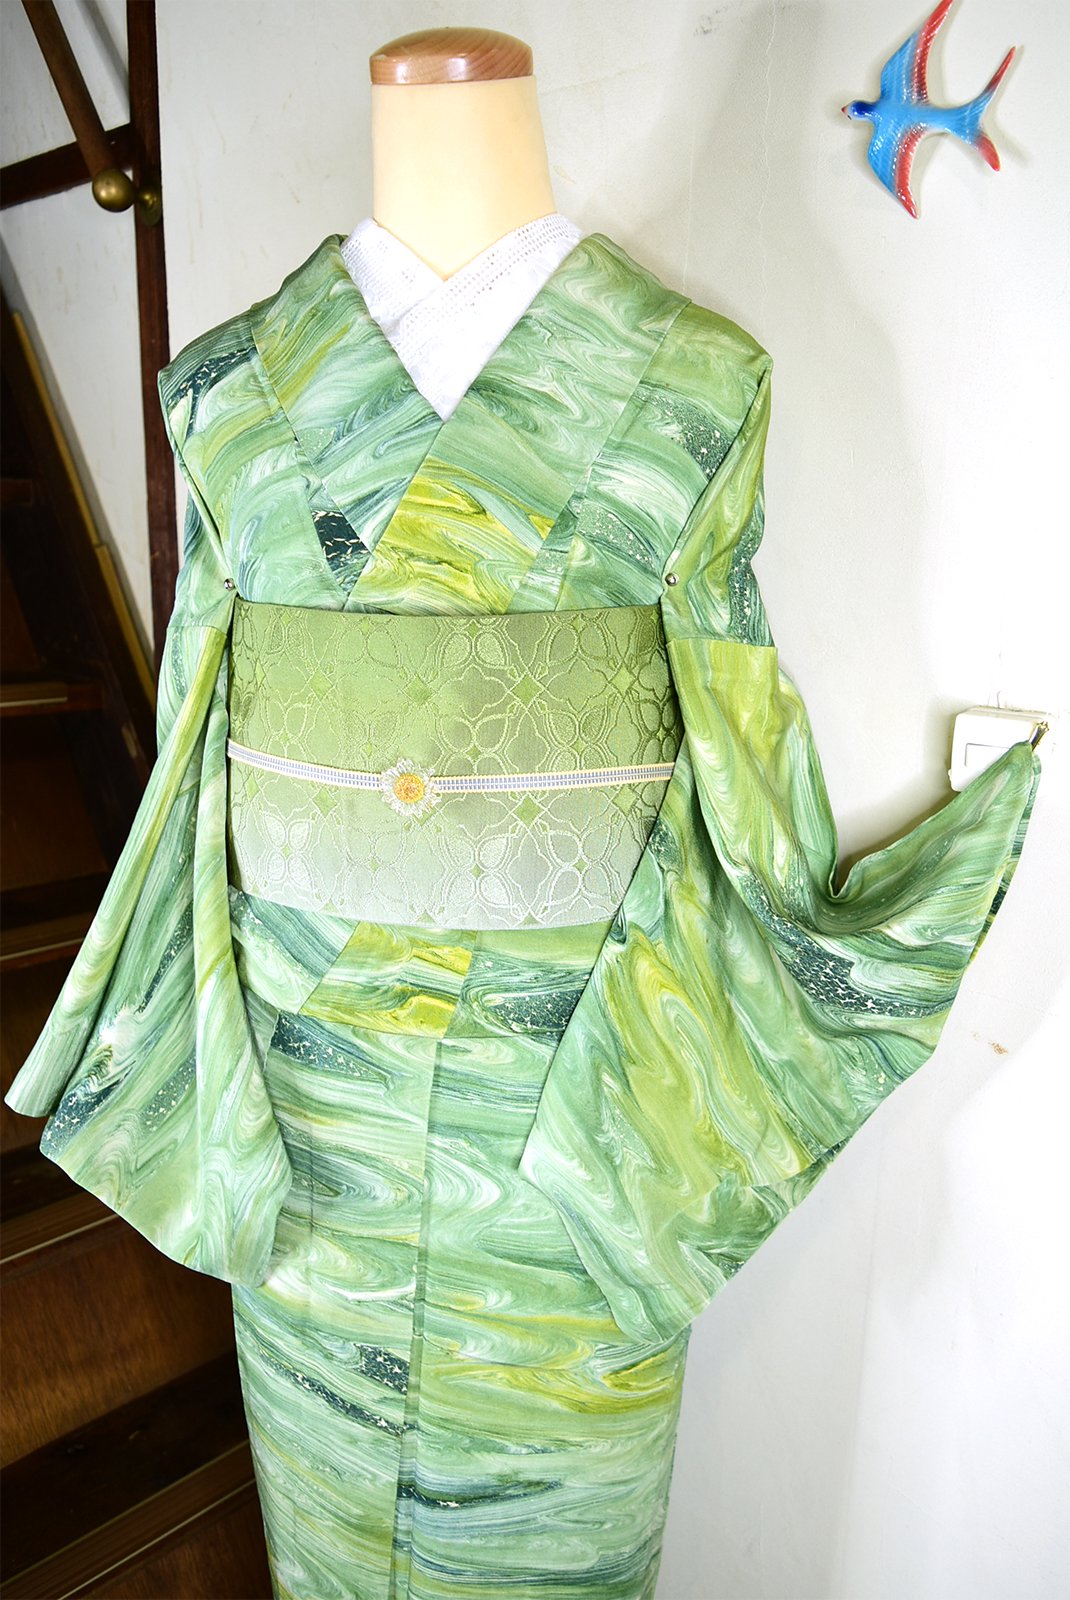 翠緑色墨流しのようなマーブル模様モダンな正絹単着物 - アンティーク